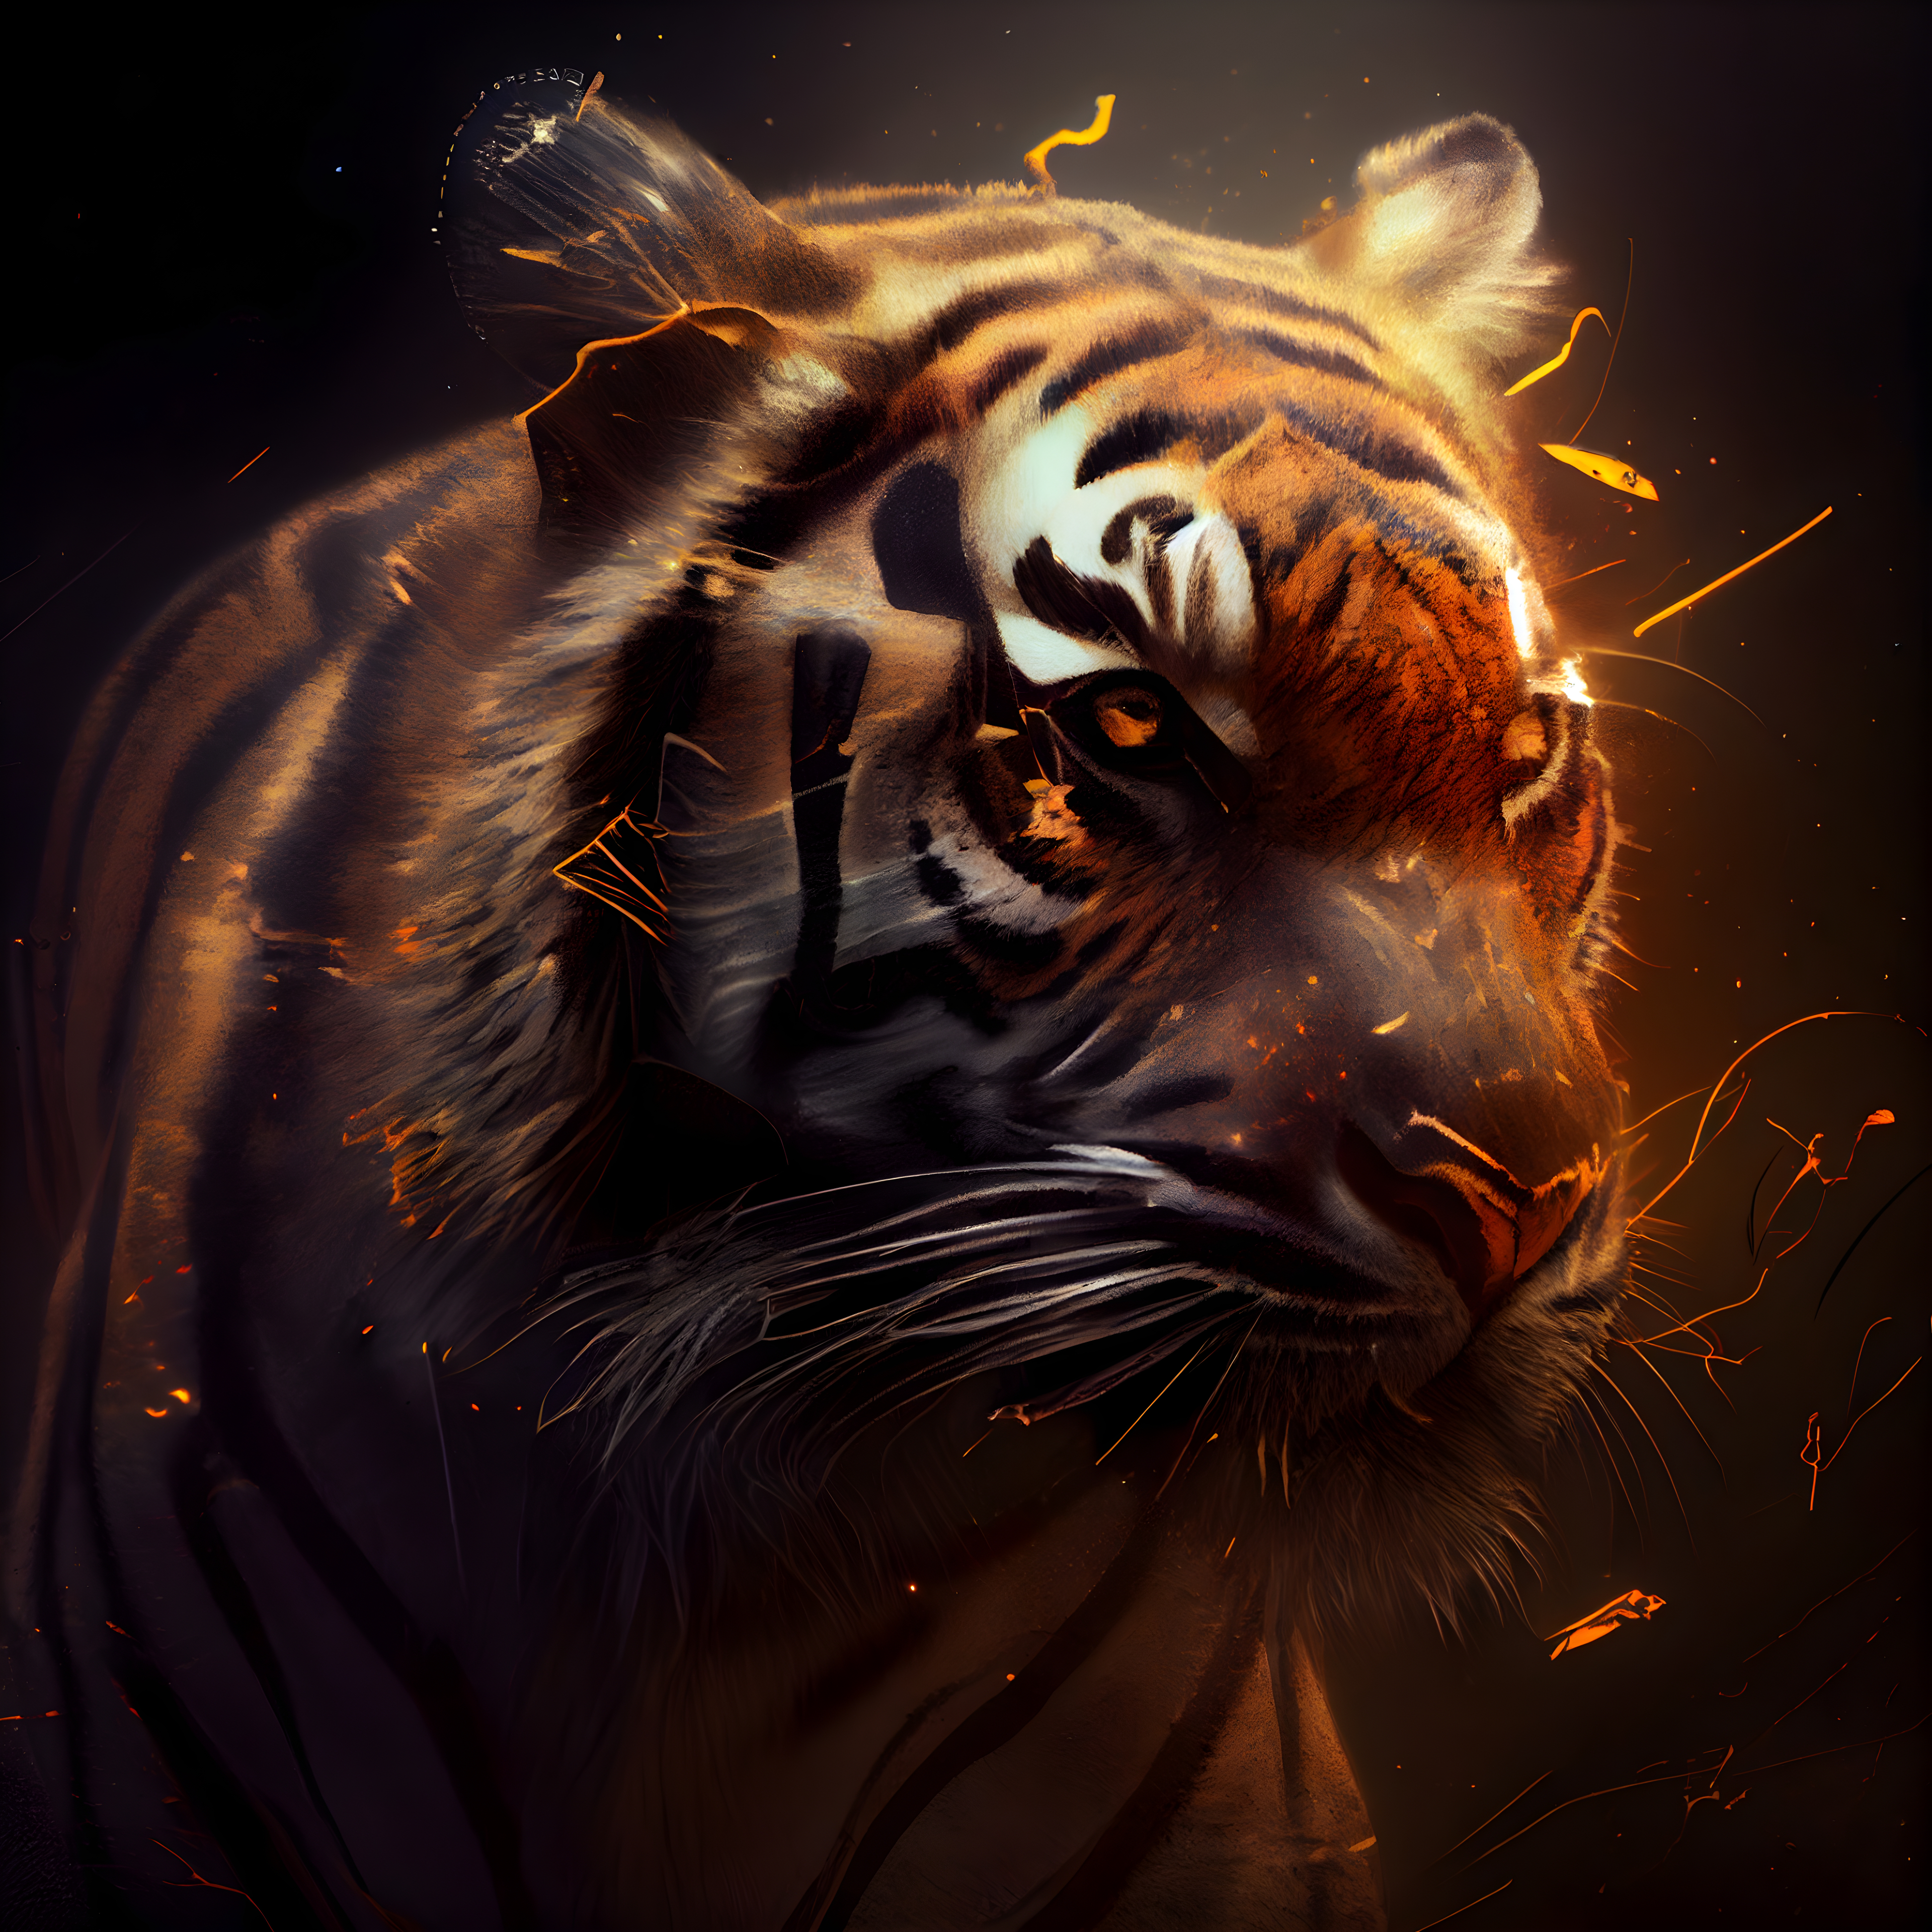 TIGER DARK WALLPAPER | Wild animal wallpaper, Animal wallpaper, Tiger  artwork